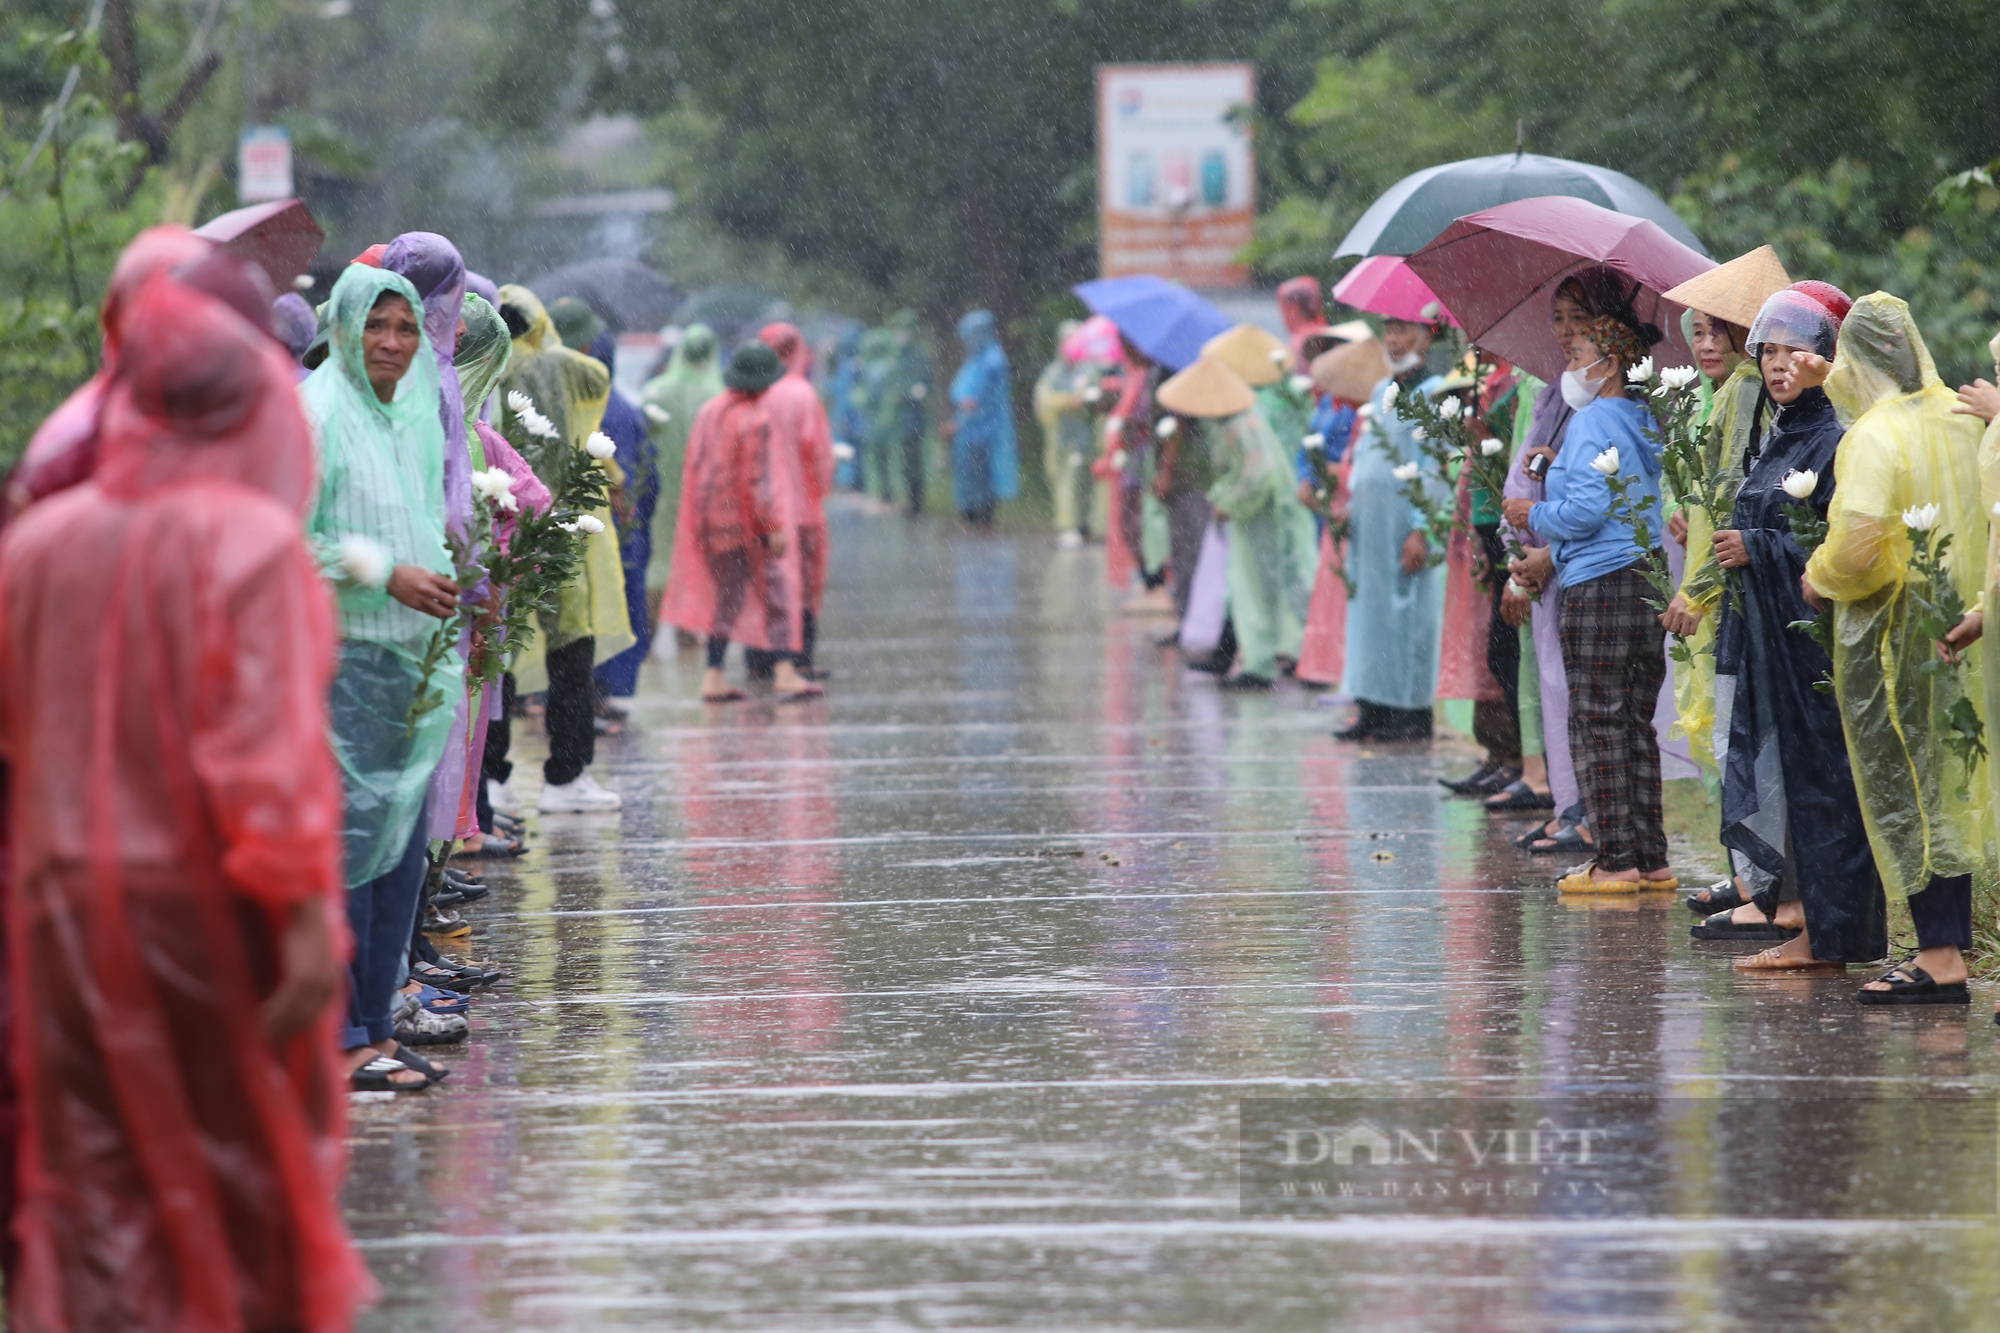 Xúc động cảnh người dân đứng dưới mưa đón Đại úy Lê Ánh Sáng trở về quê nhà - Ảnh 2.